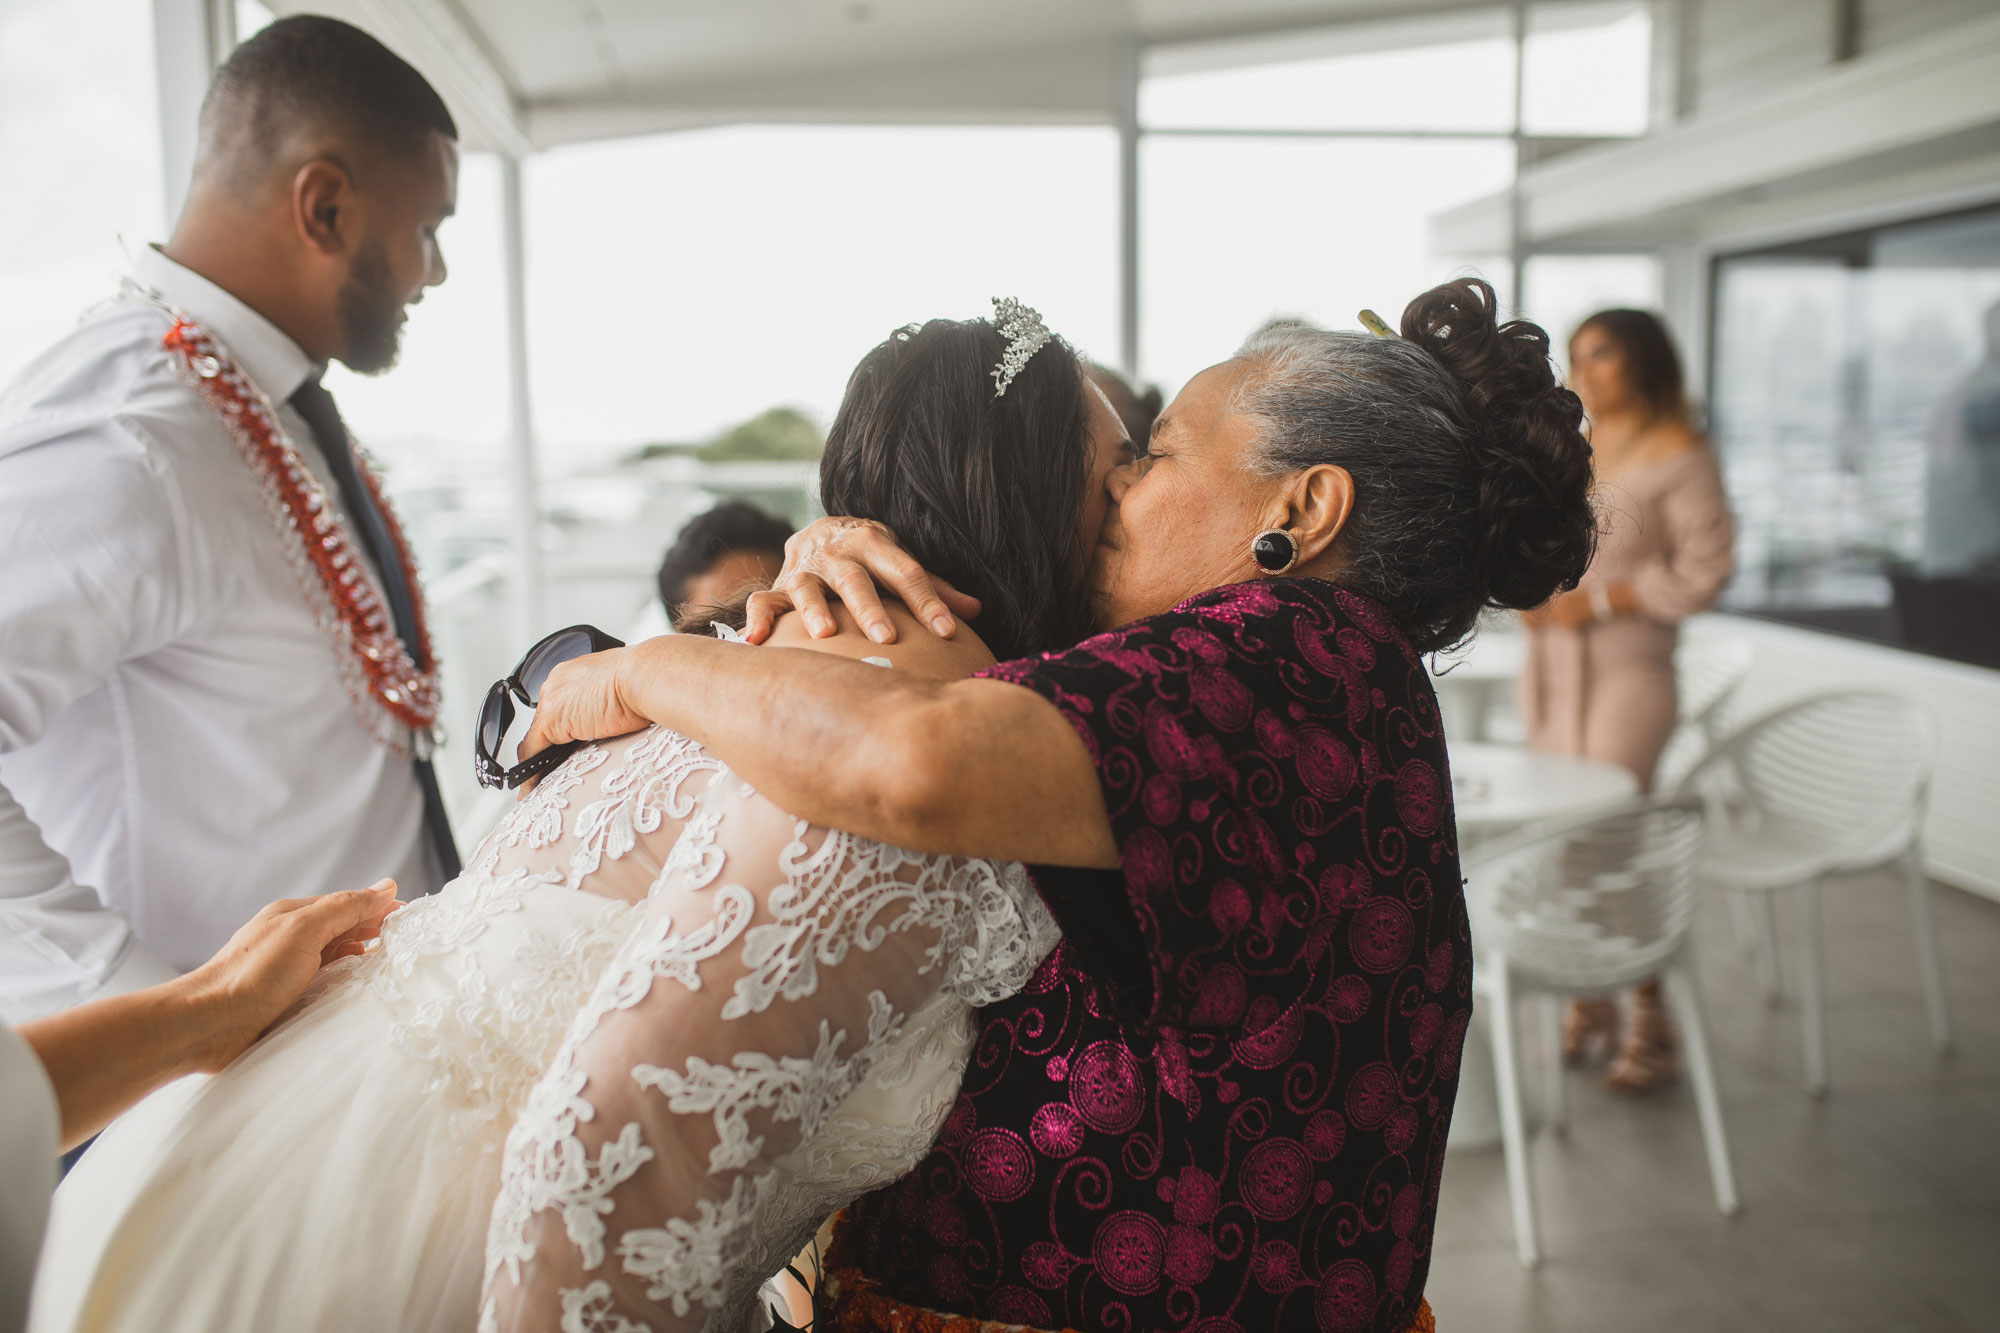 grandma hugging the bride